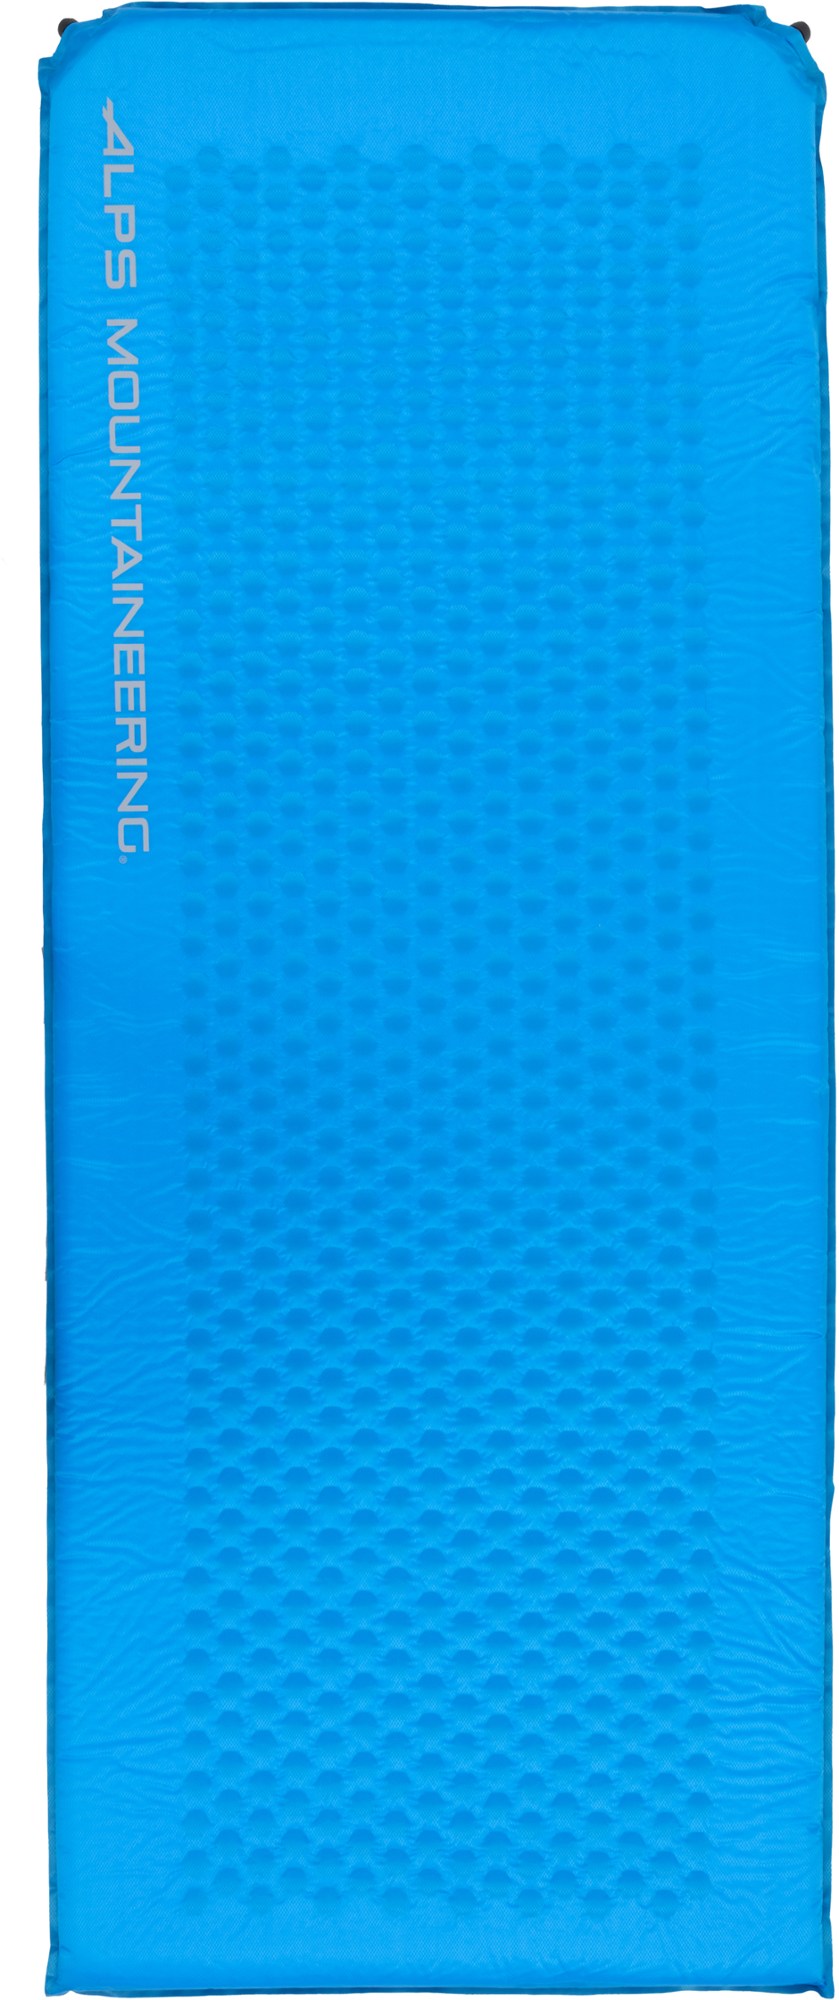 flexcore air pad длинный alps mountaineering синий Flexcore Air Pad — XL ALPS Mountaineering, синий